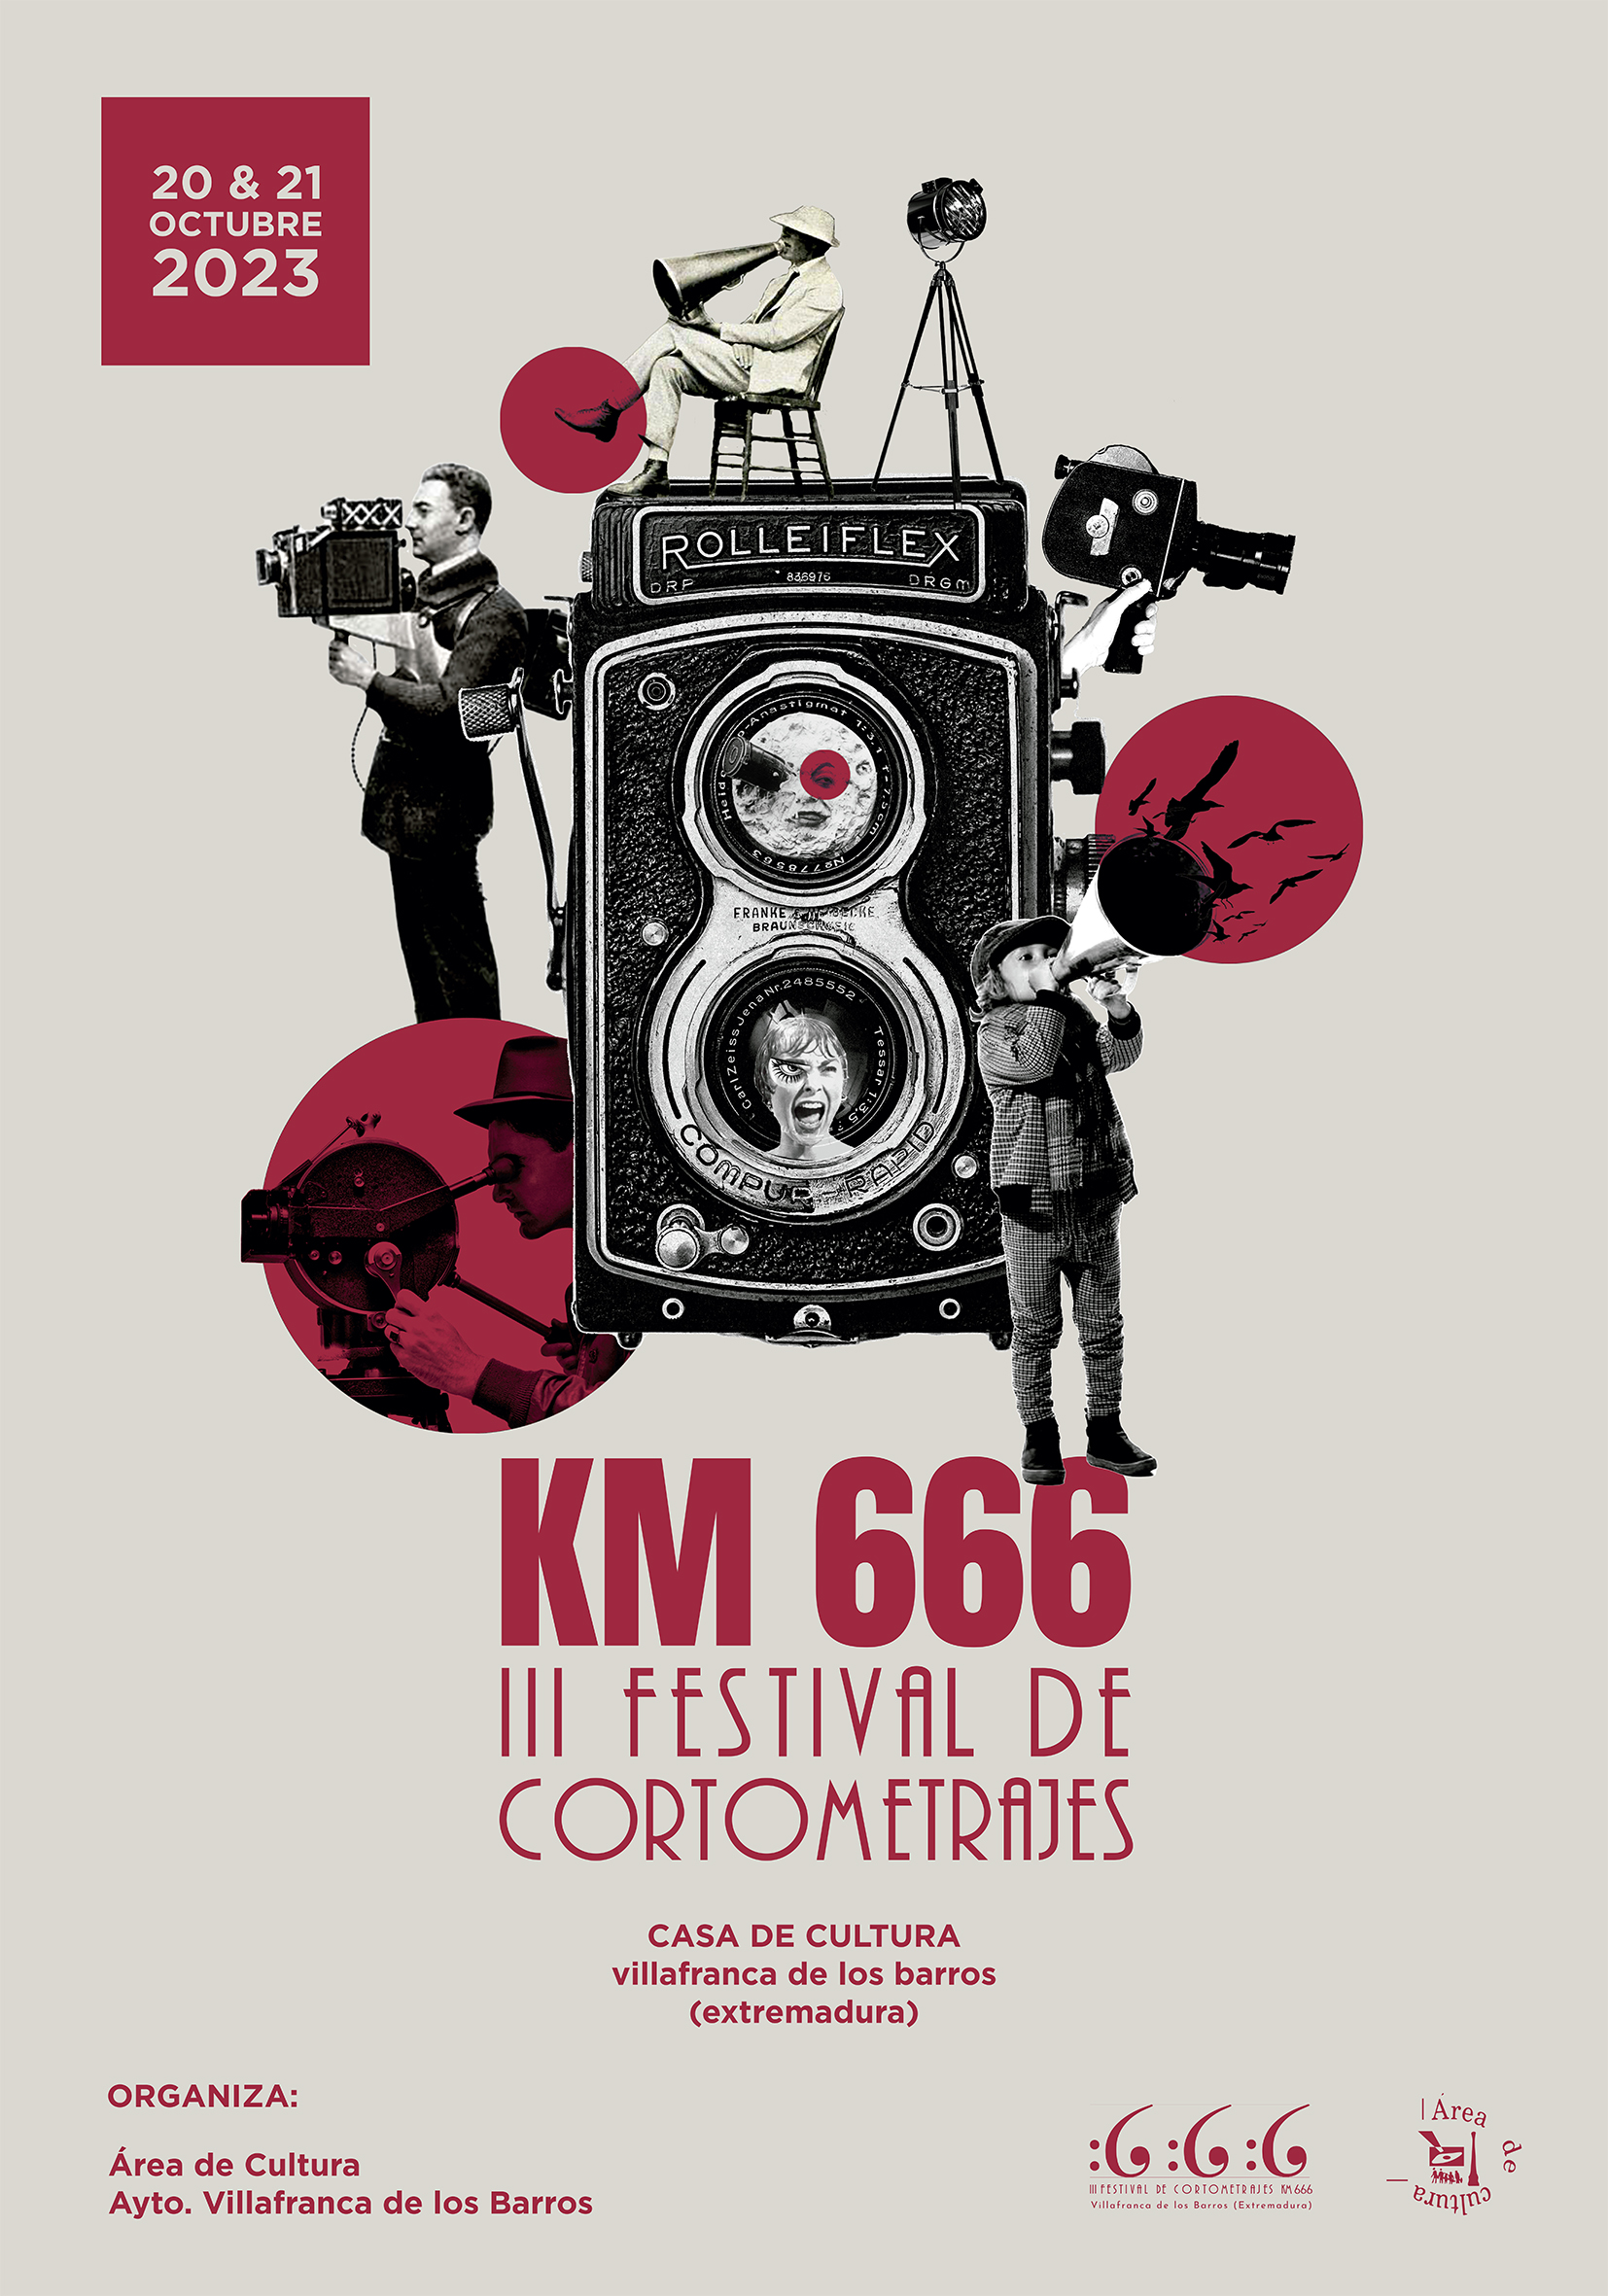 III FESTIVAL DE CORTOMETRAJES KM666